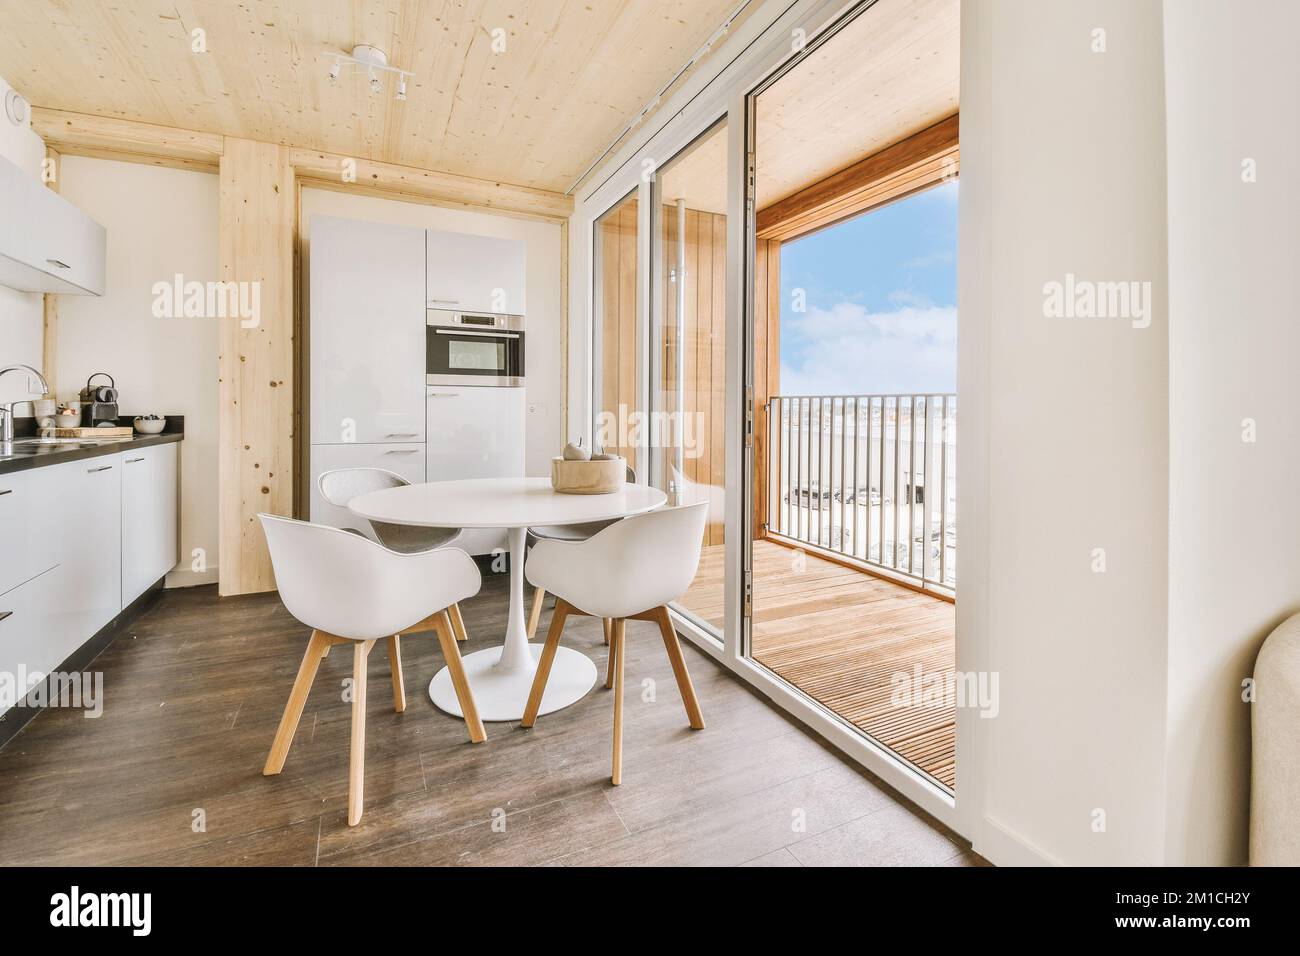 Home Interior Design der modernen Loft-Wohnung mit offener Küche In minimalistischem Stil und geräumiger Essecke mit Tisch und Stühle Stockfoto